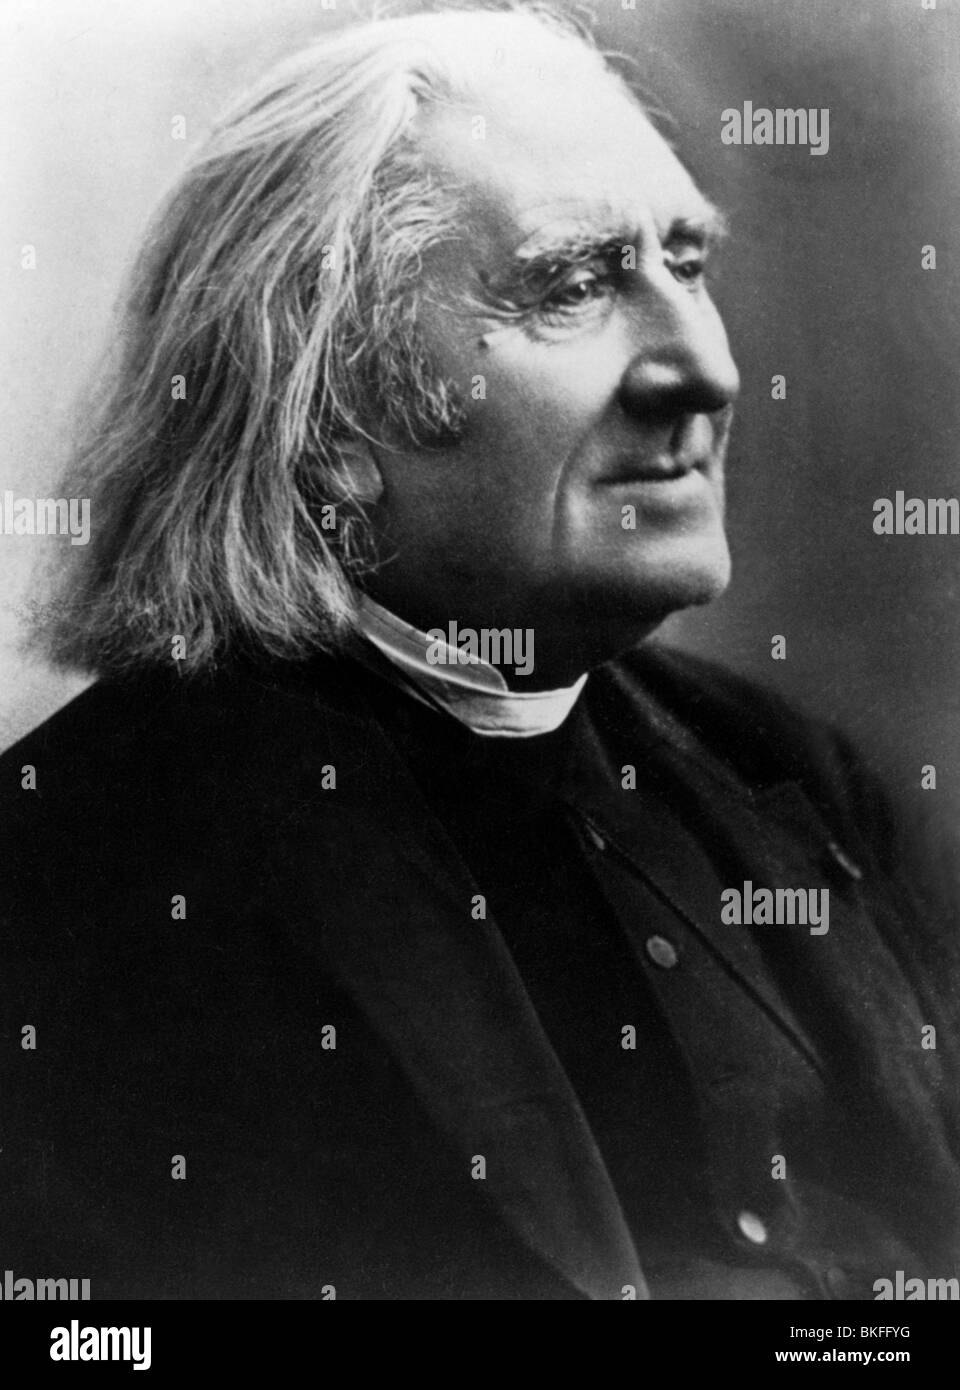 Liszt, Franz, 22.10.1811 - 31.7.1886, compositeur et pianiste hongrois, portrait, photo de Nadar, Paris, 1886, Banque D'Images